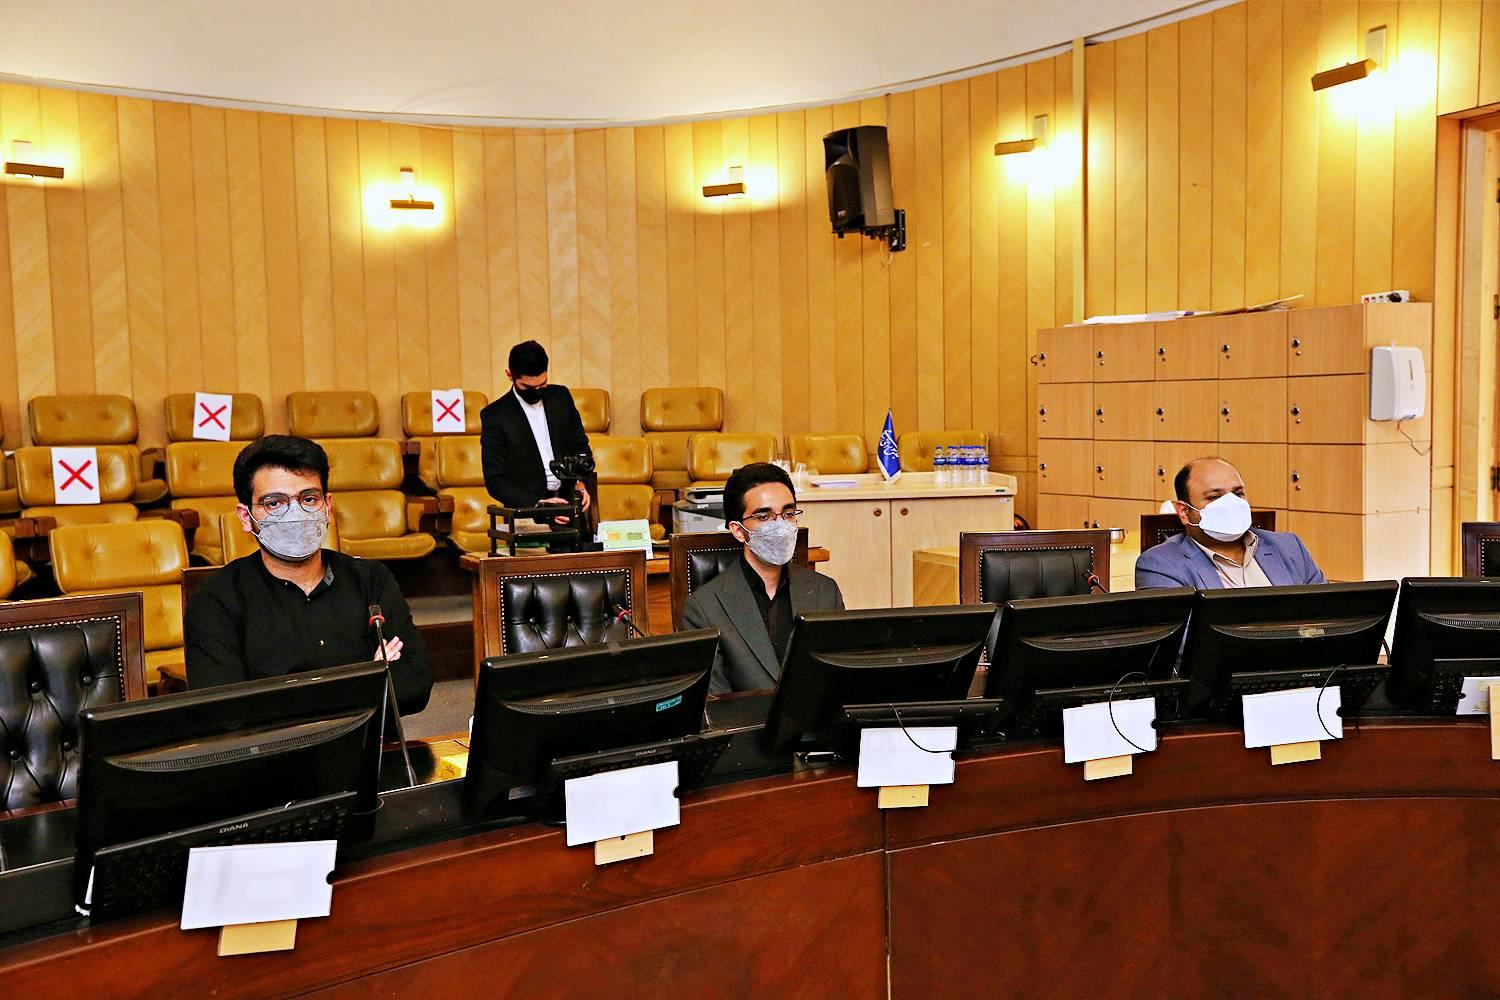 دومین مجمع ملی حامیان زعفران ایران